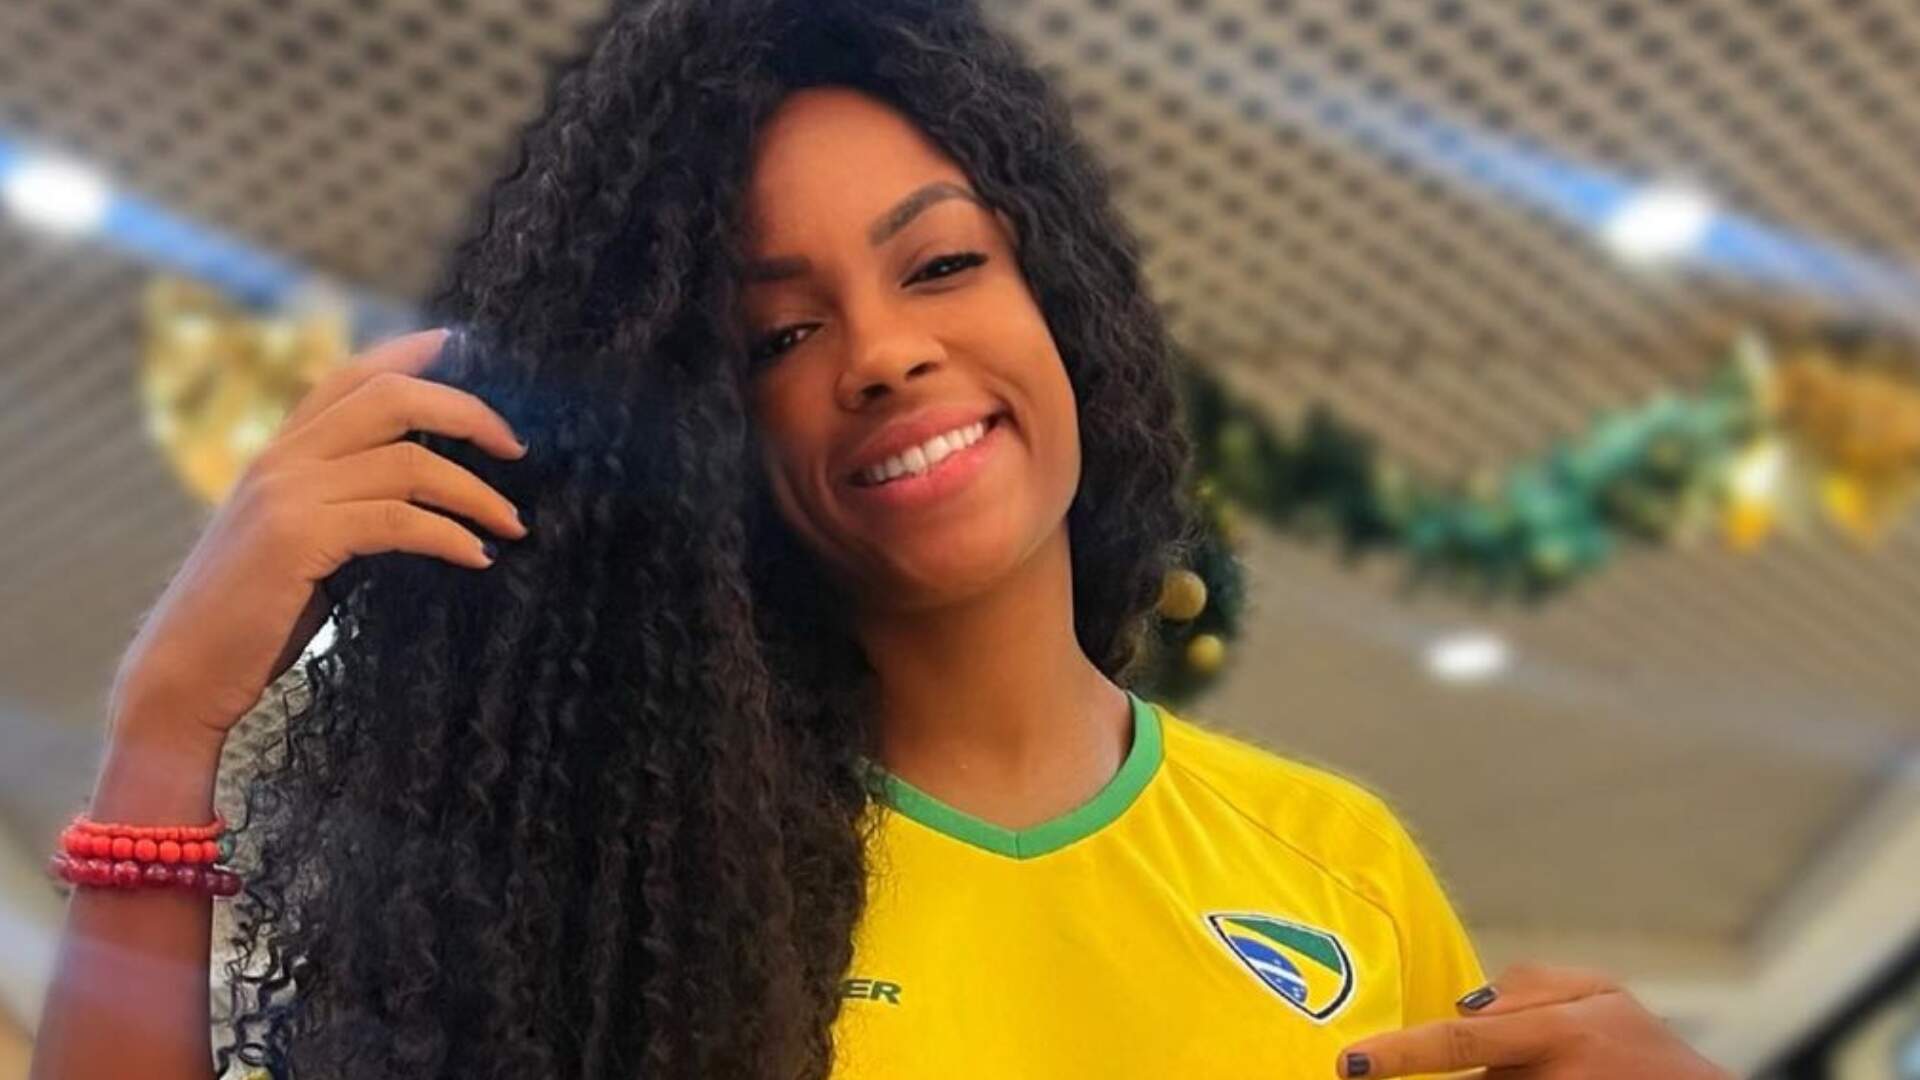 Lumena “autoriza” goleada do Brasil posando apenas com fio-dental da Seleção Brasileira - Metropolitana FM